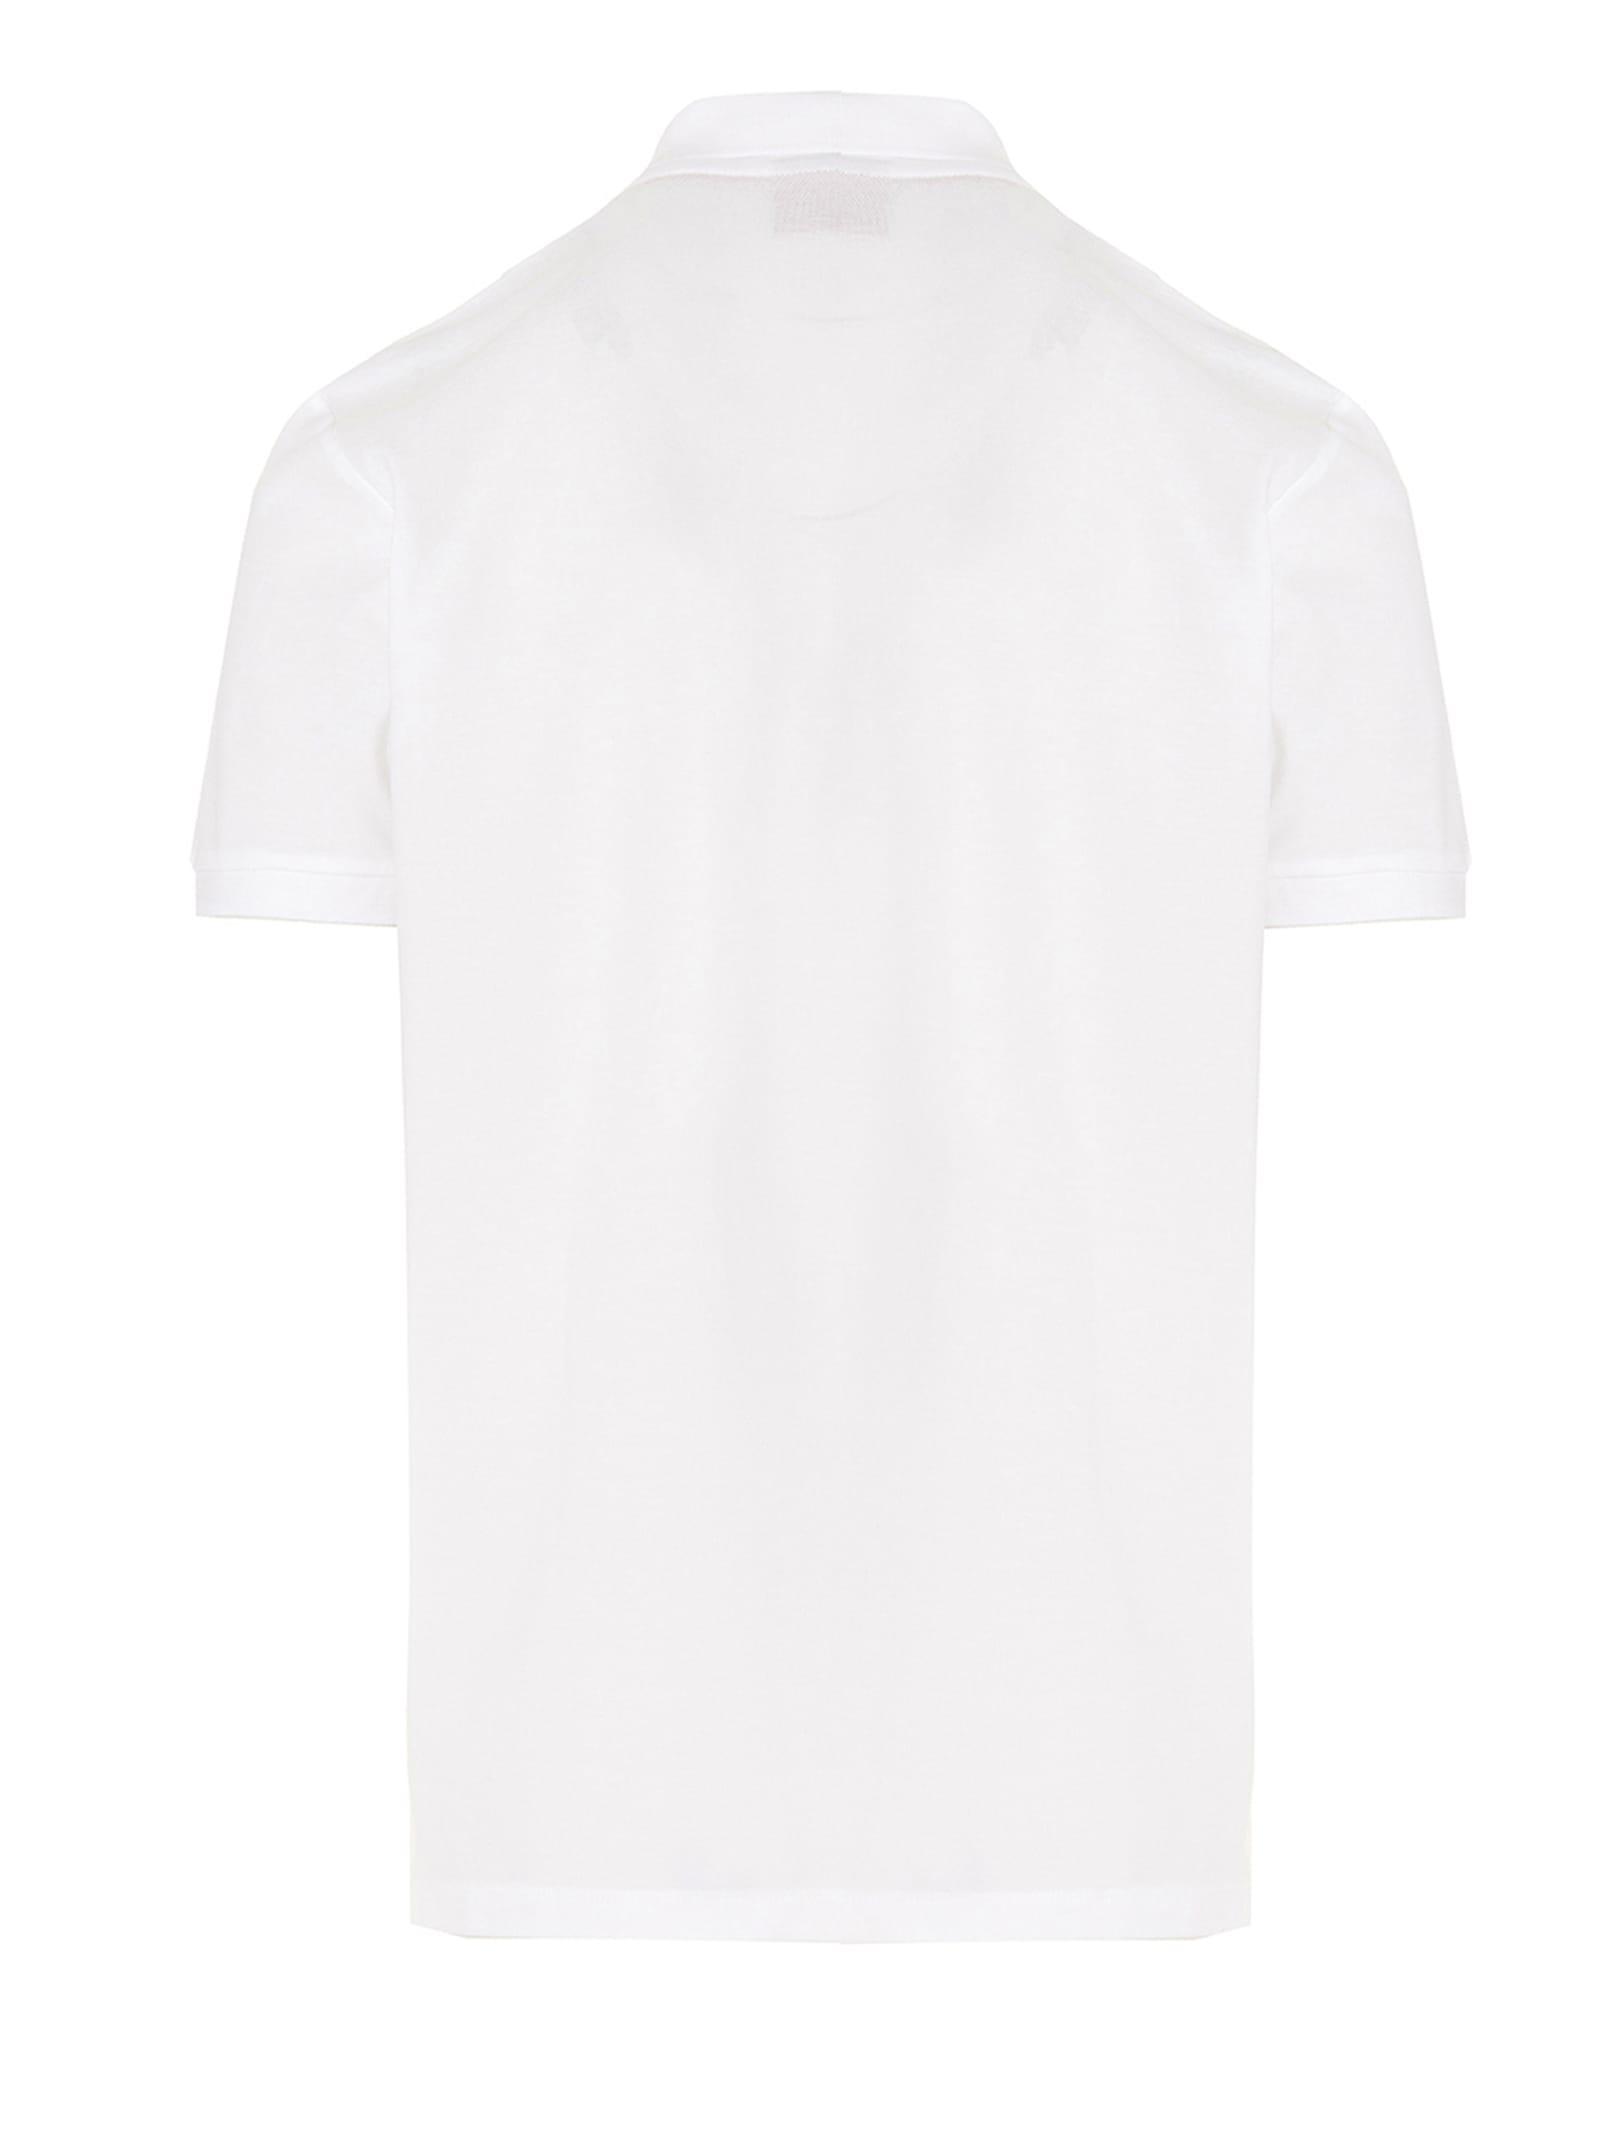 BOSS by HUGO BOSS Logo Cotton Polo Shirt in White for Men | Lyst